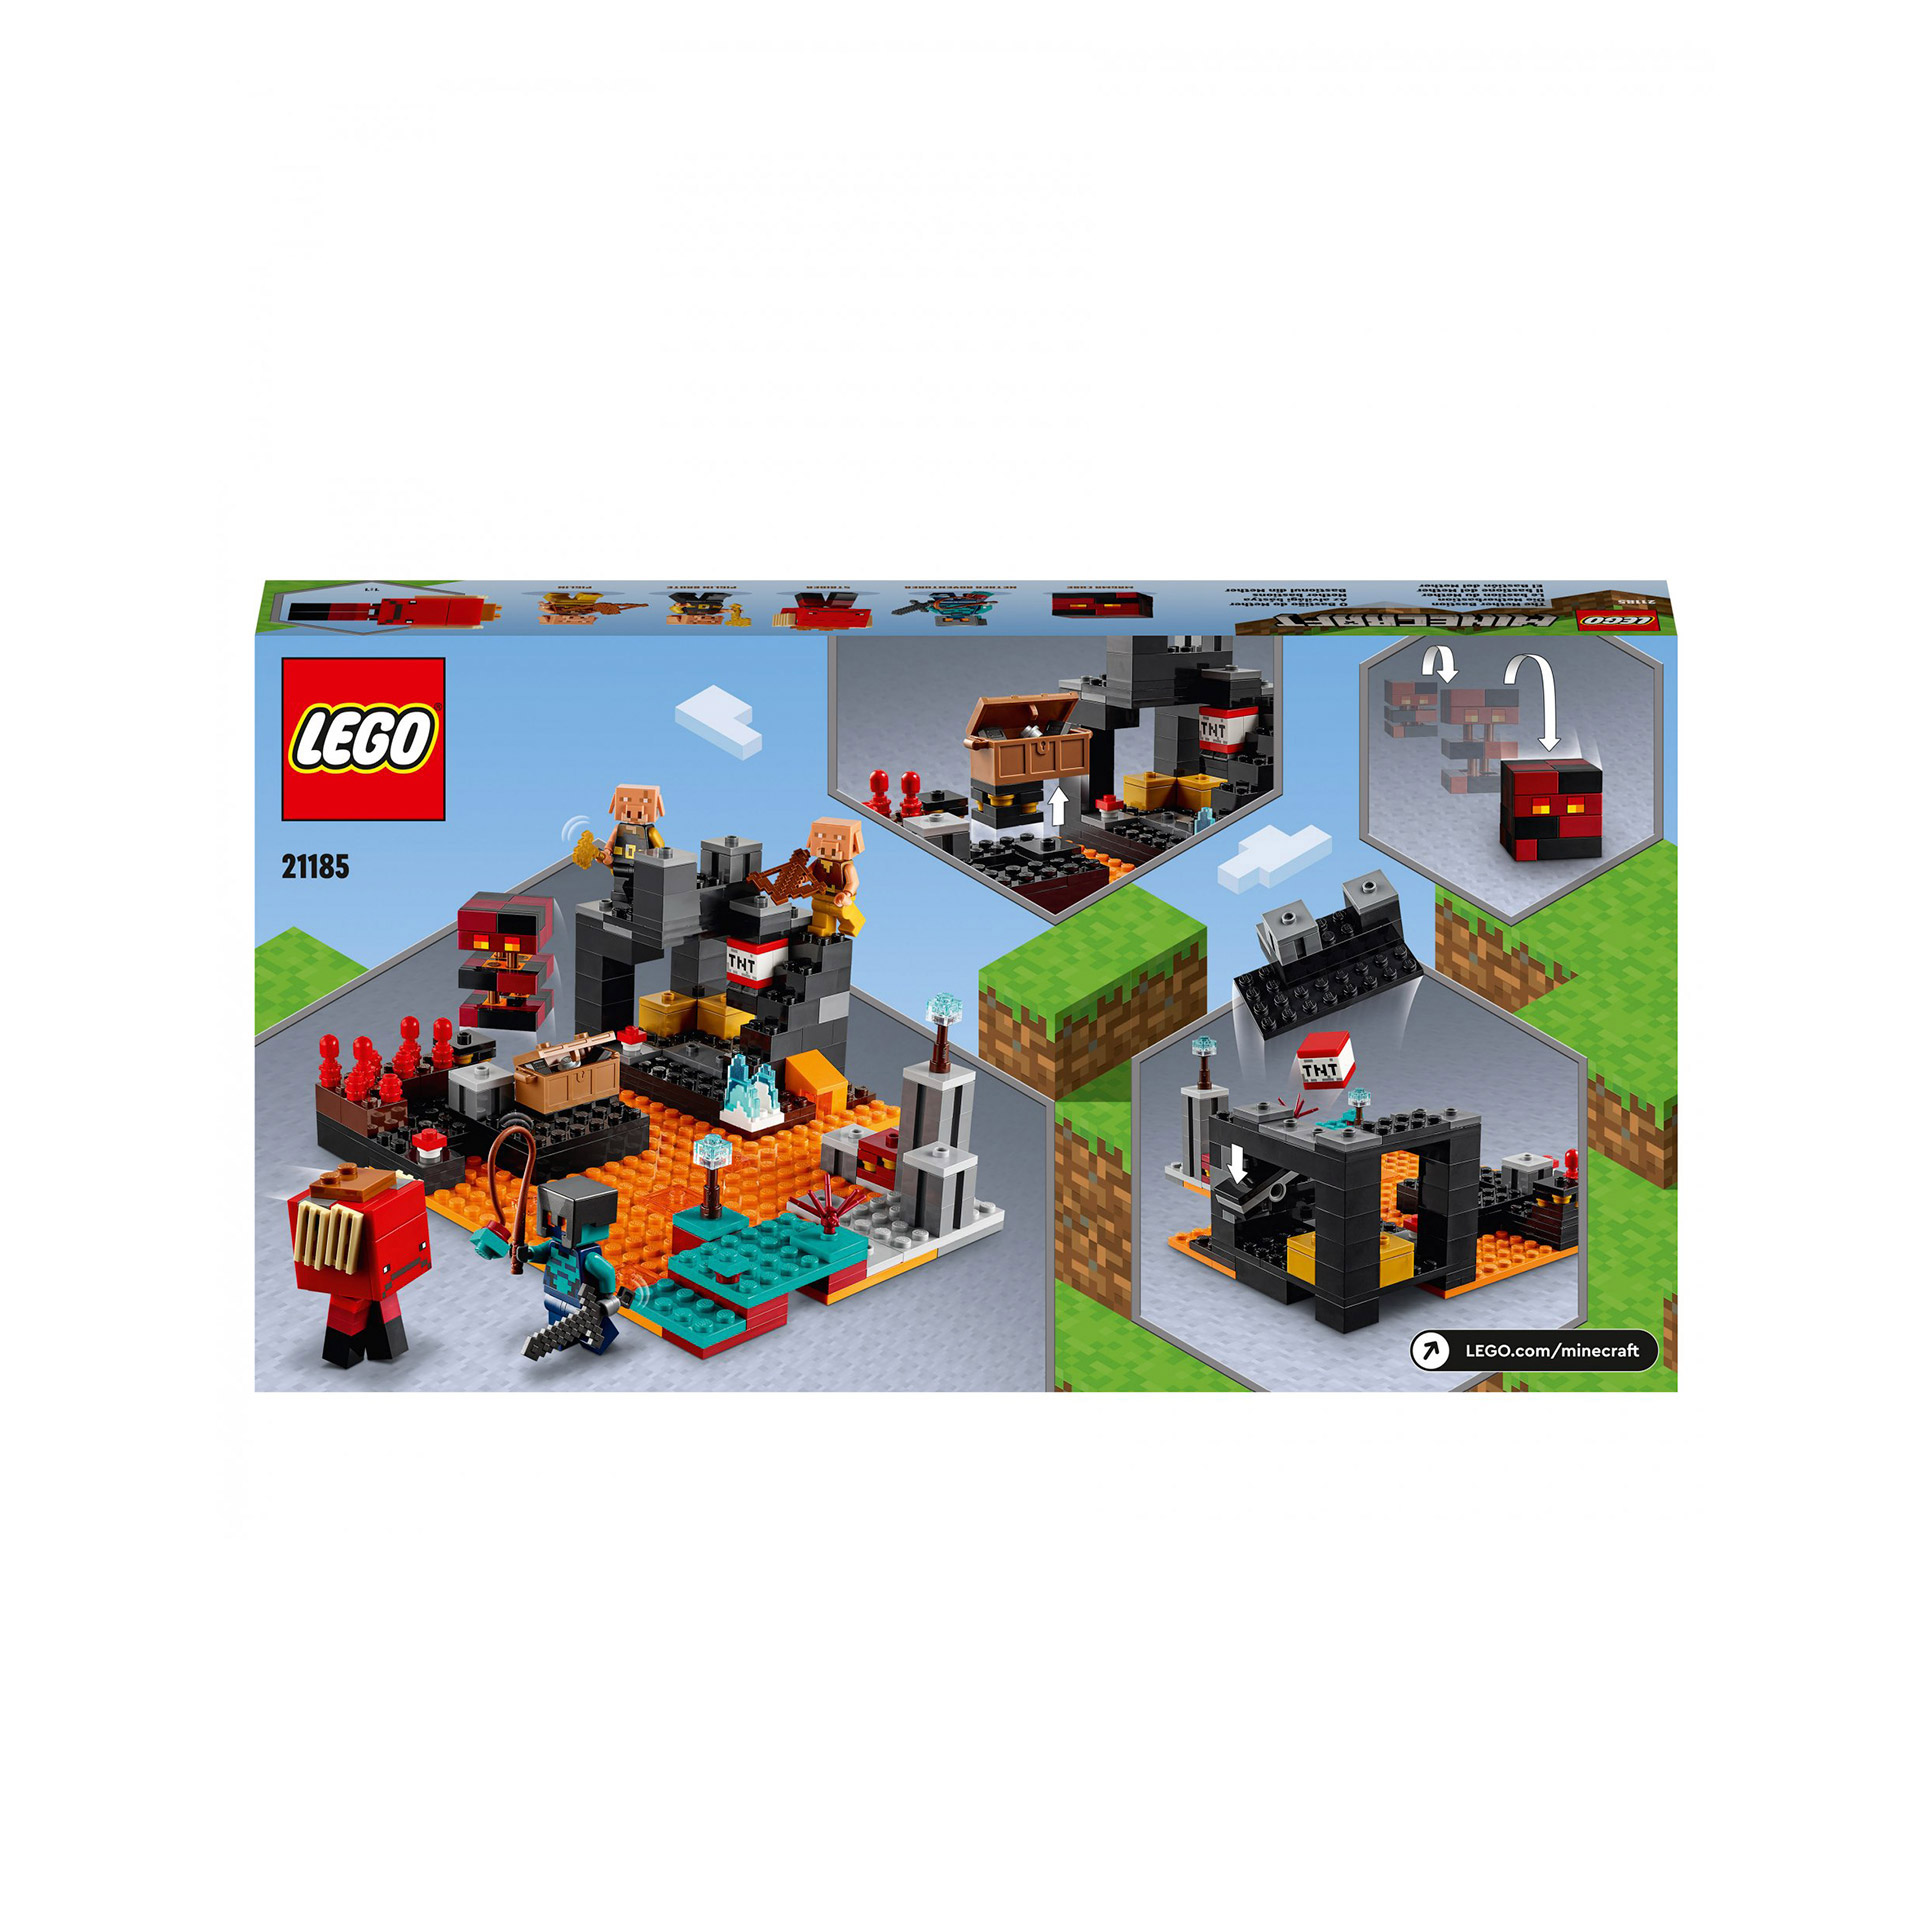 LEGO Minecraft Il Bastione del Nether, Modellino da Costruire, Castello Giocatto 21185, , large